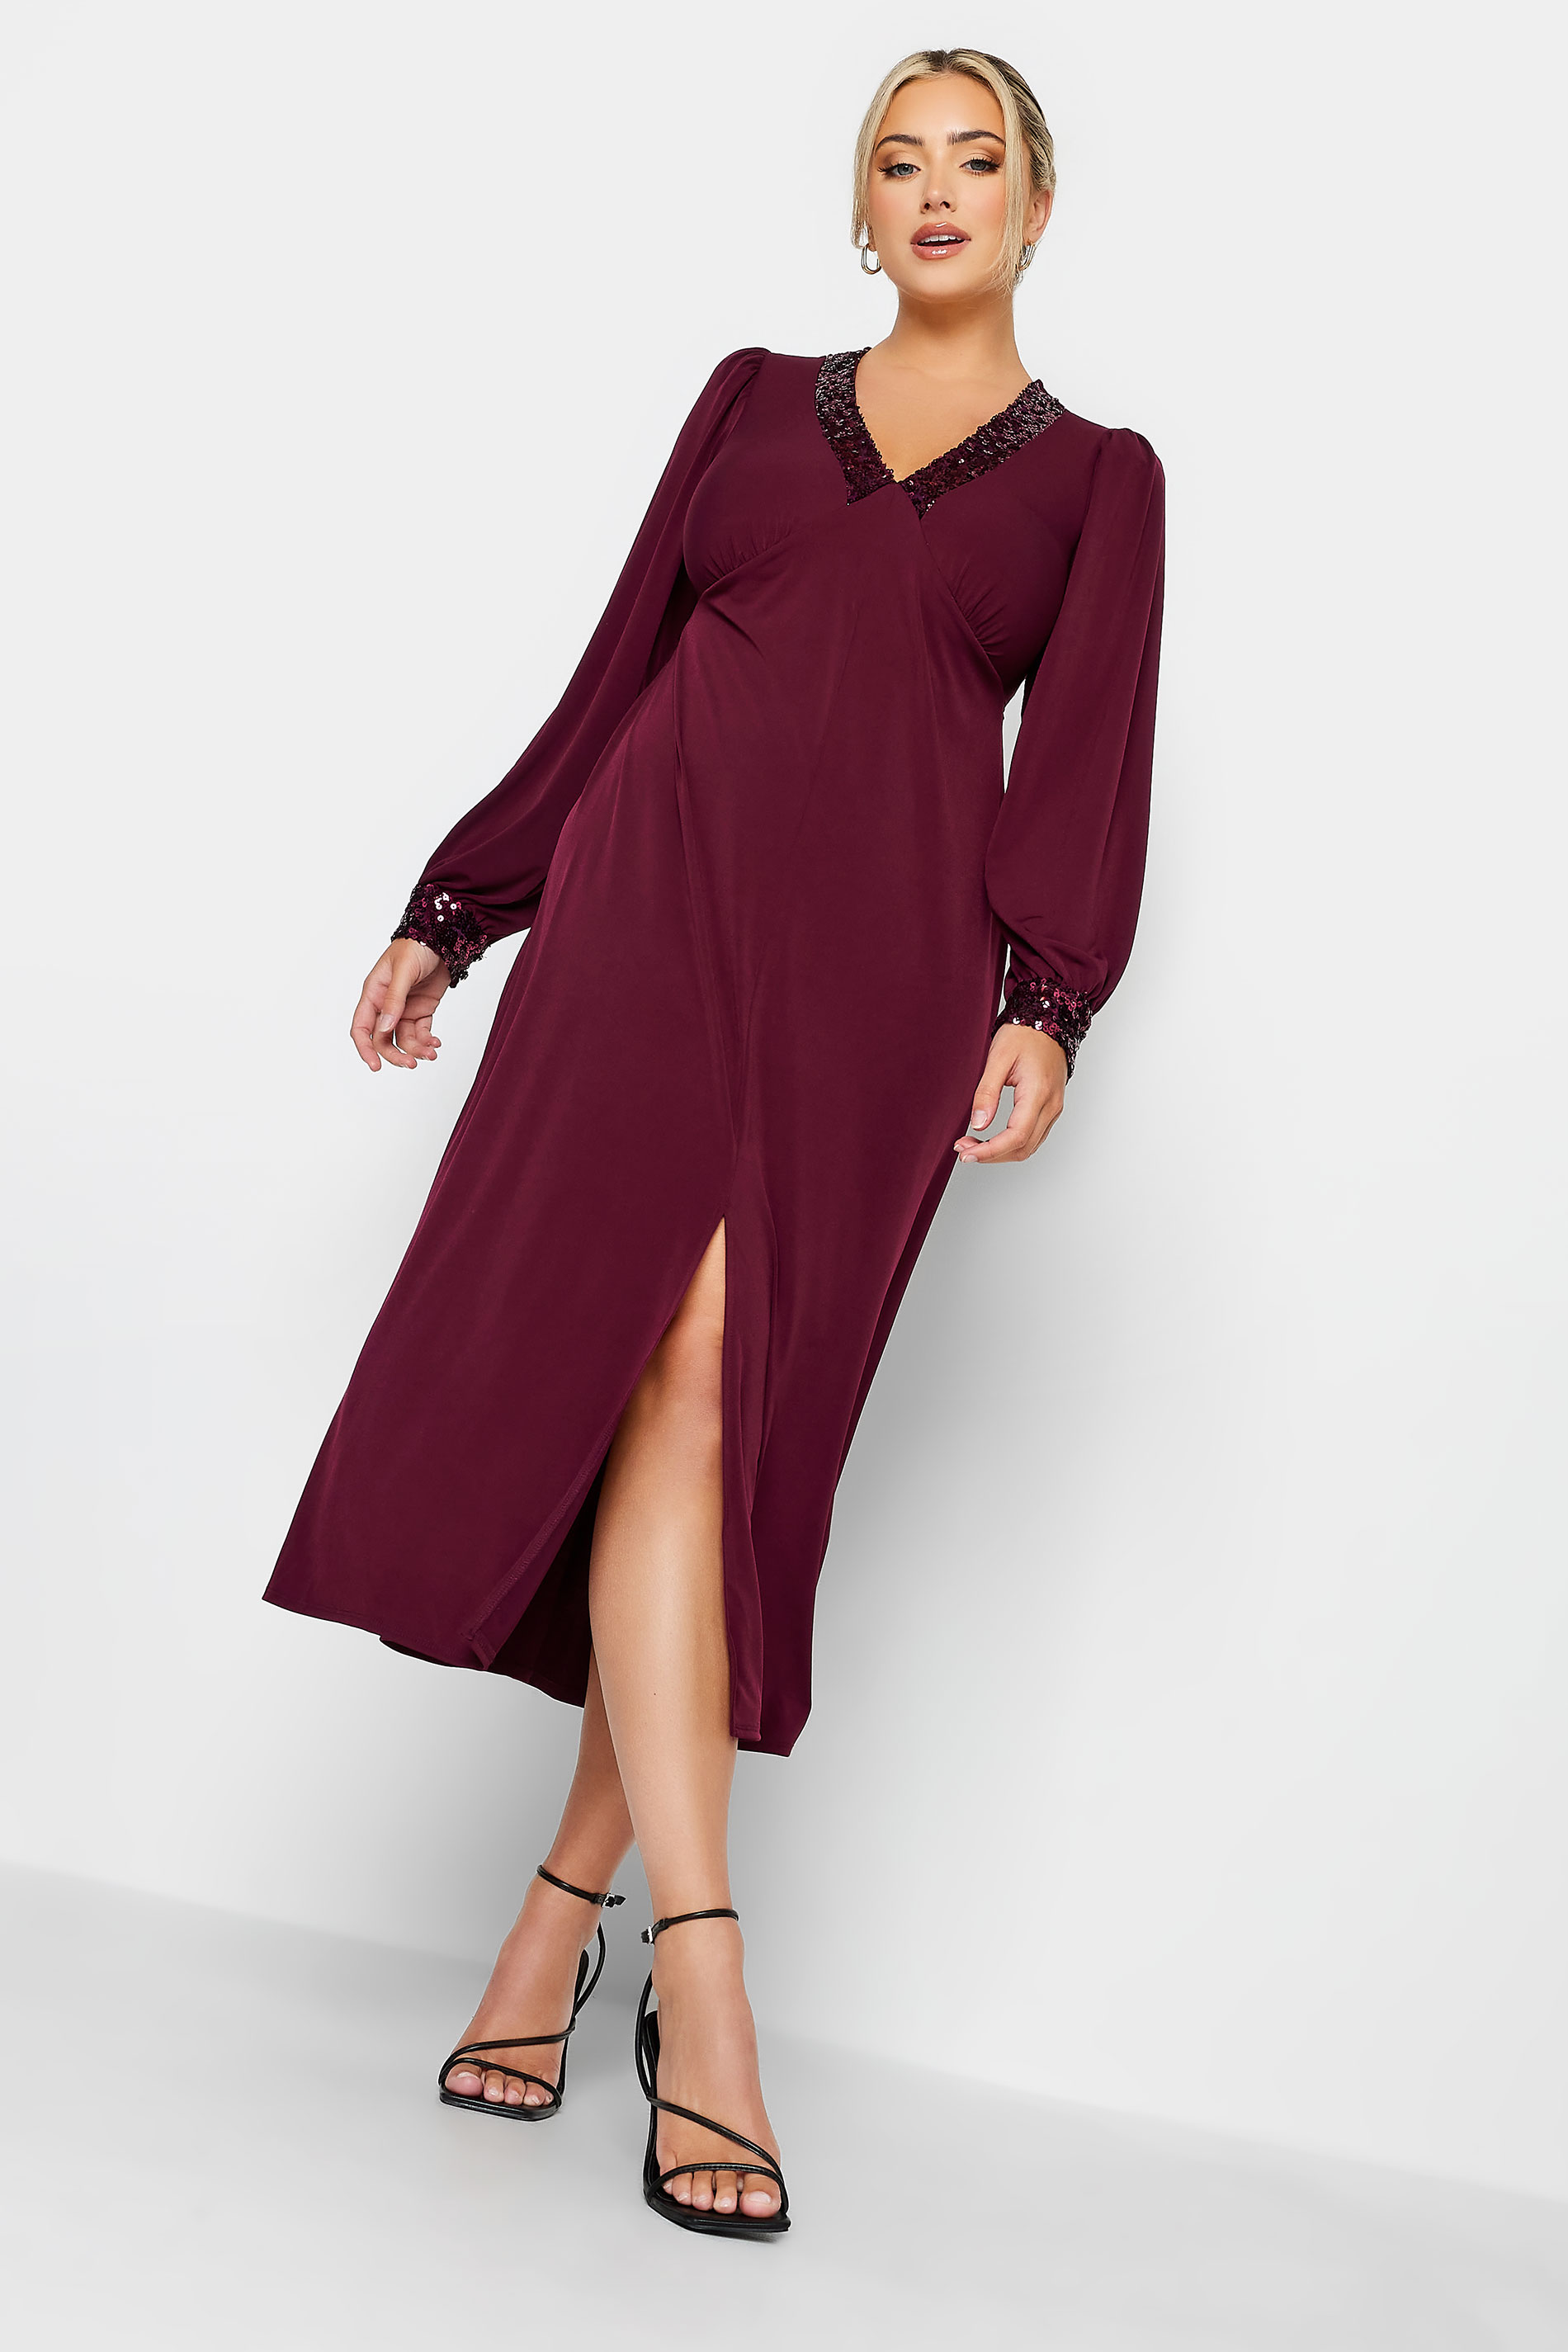 YOURS LONDON Plus Size Plum Purple Sequin Split Front Dress | Yours Clothing 1